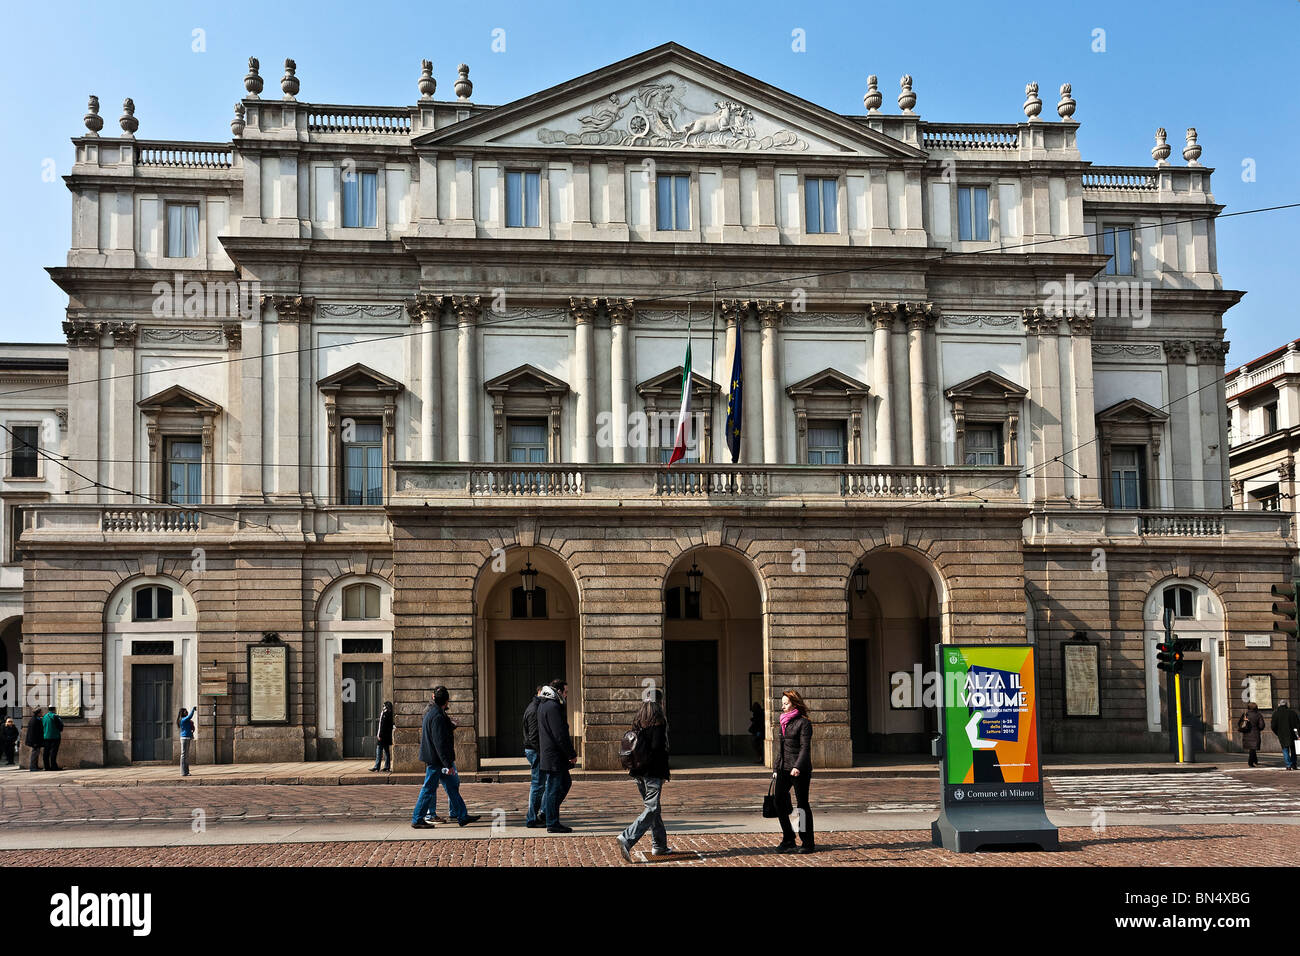 La scala theather, Giuseppe Piermarini architect, 1776, Milan, Italy Stock  Photo - Alamy